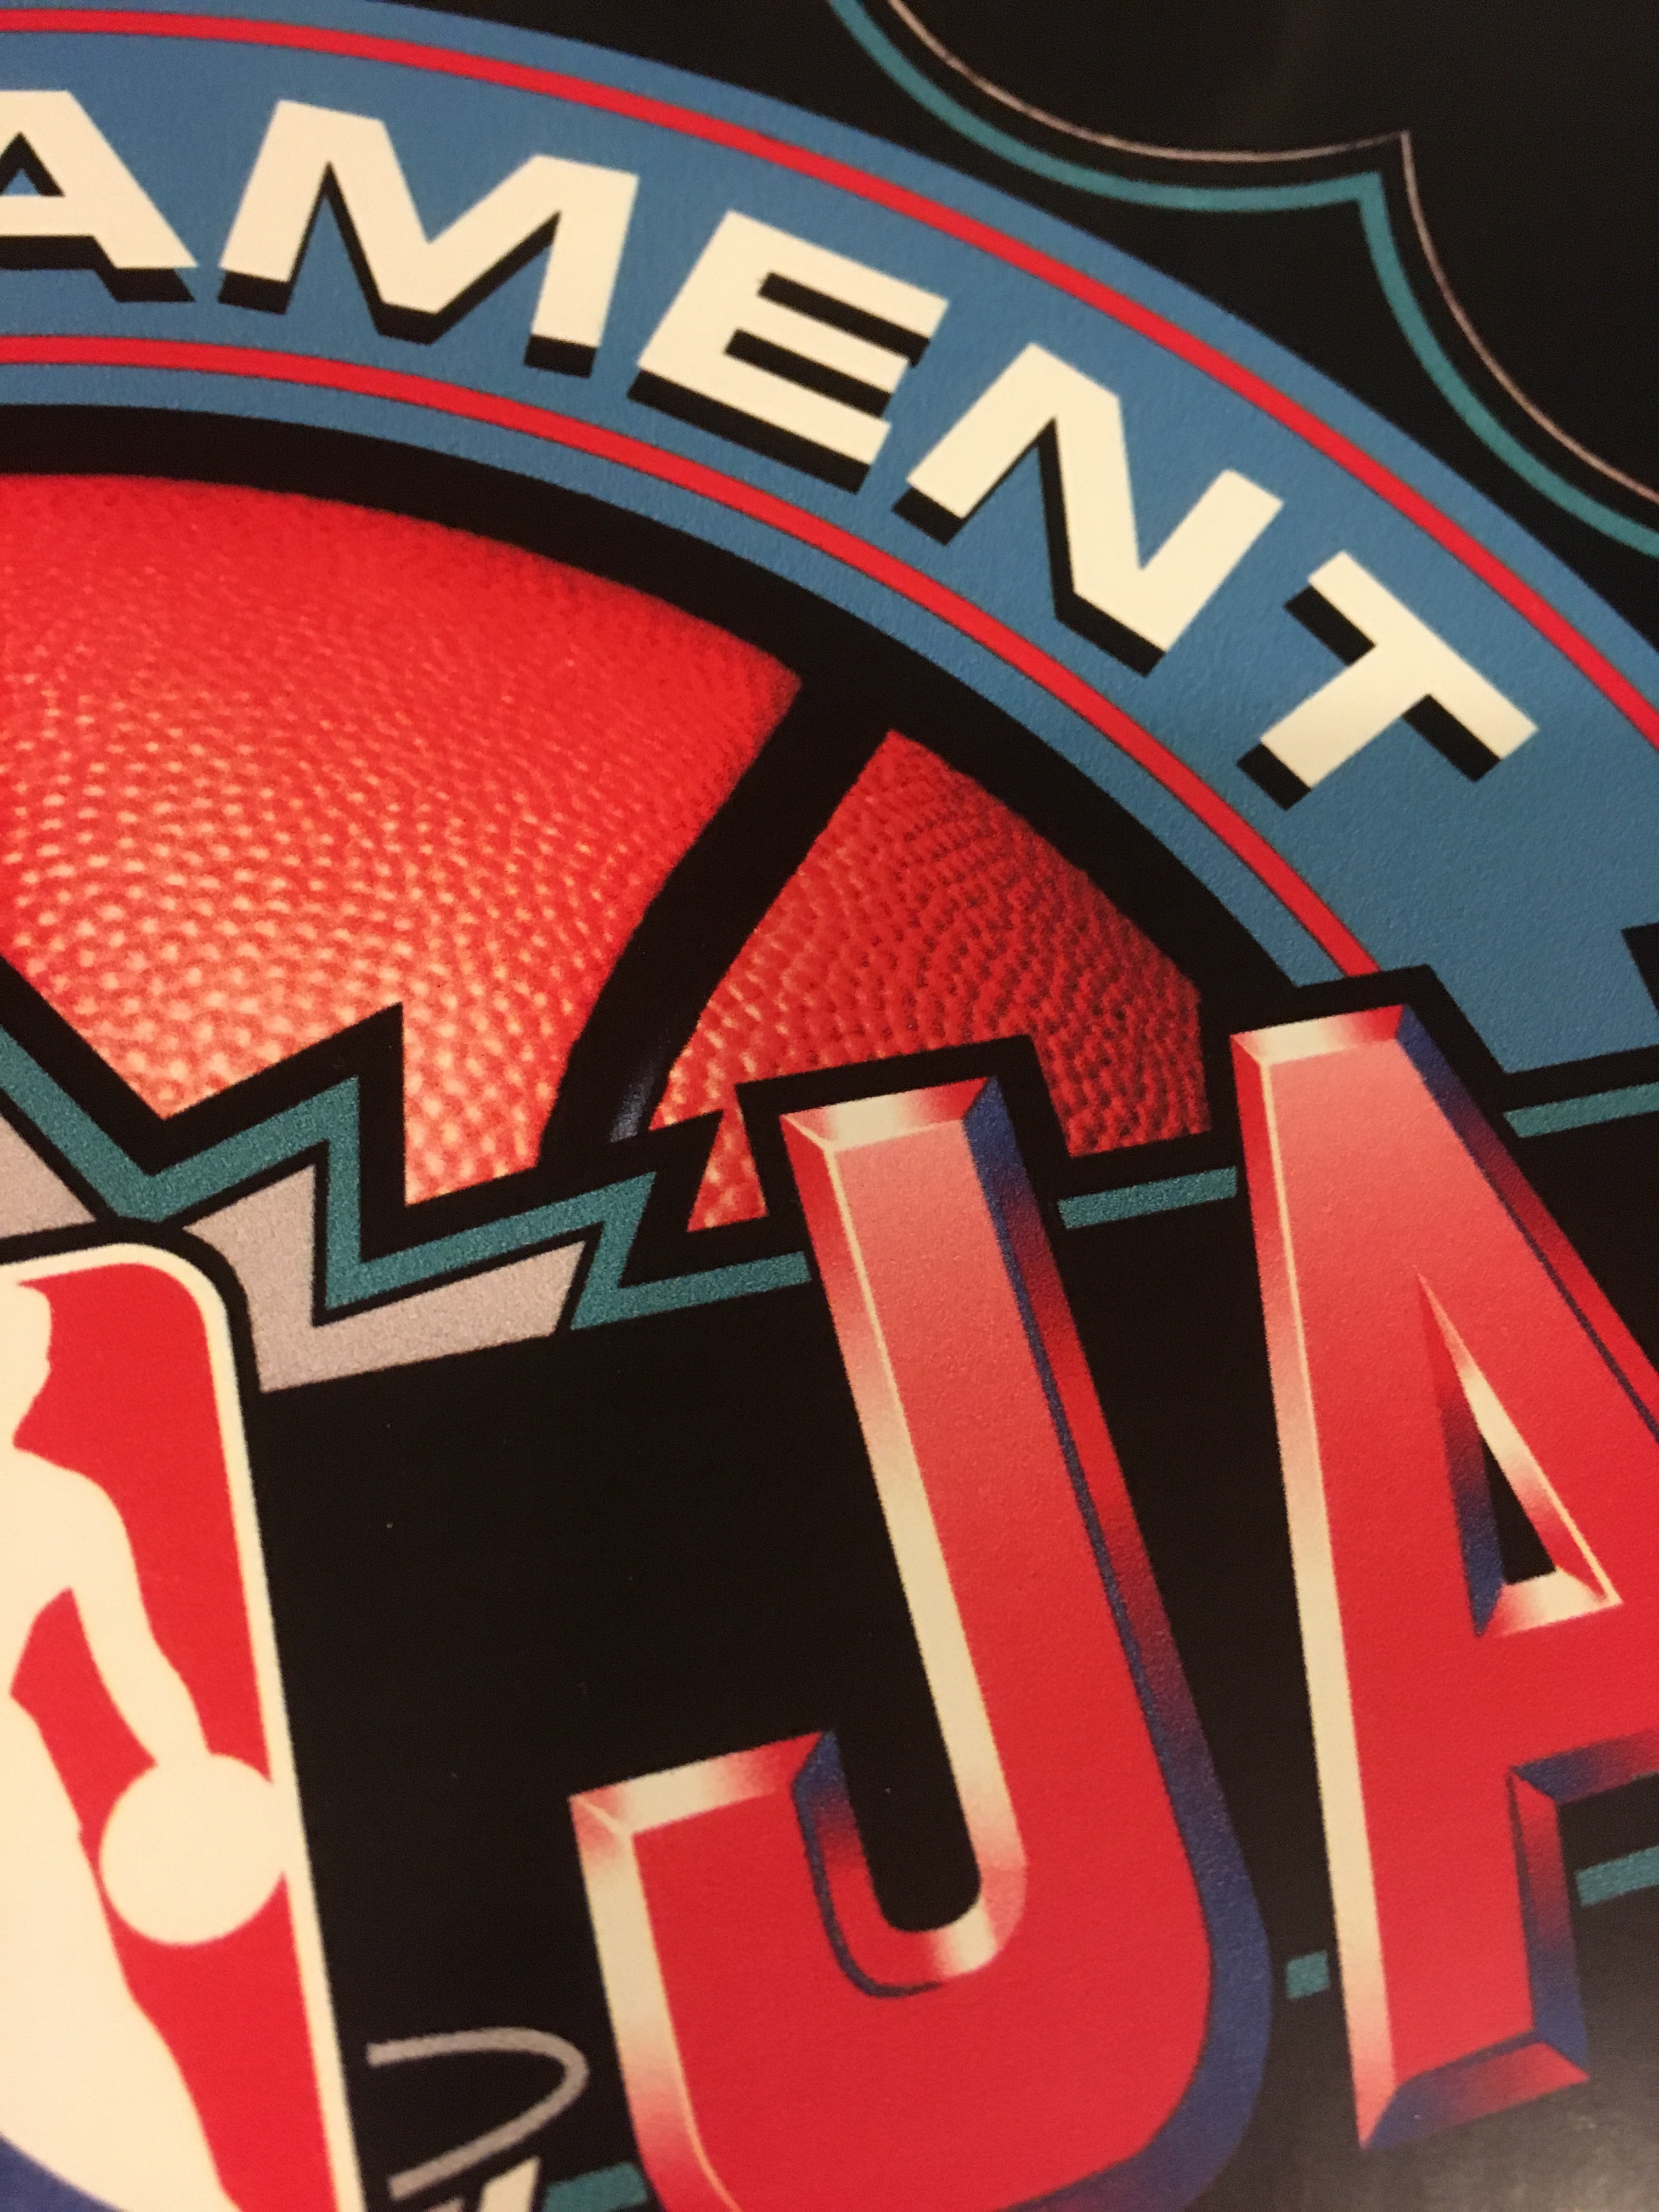 Arte del kit de conversión de NBA Jam Tournament Edition